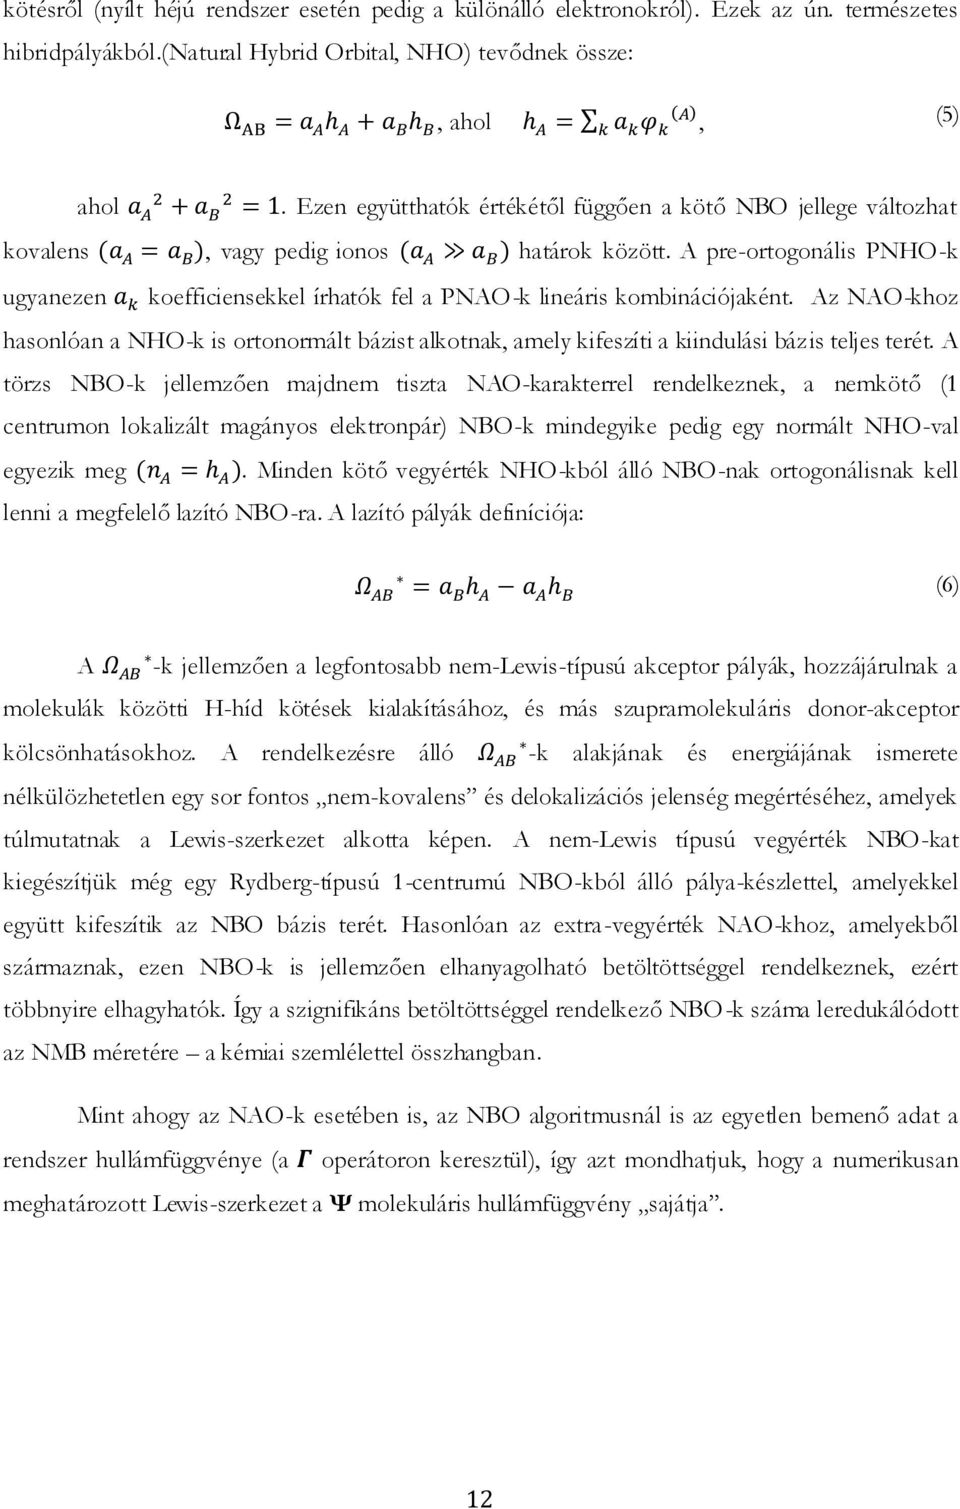 A pre-ortogonális PNHO-k ugyanezen koefficiensekkel írhatók fel a PNAO-k lineáris kombinációjaként.